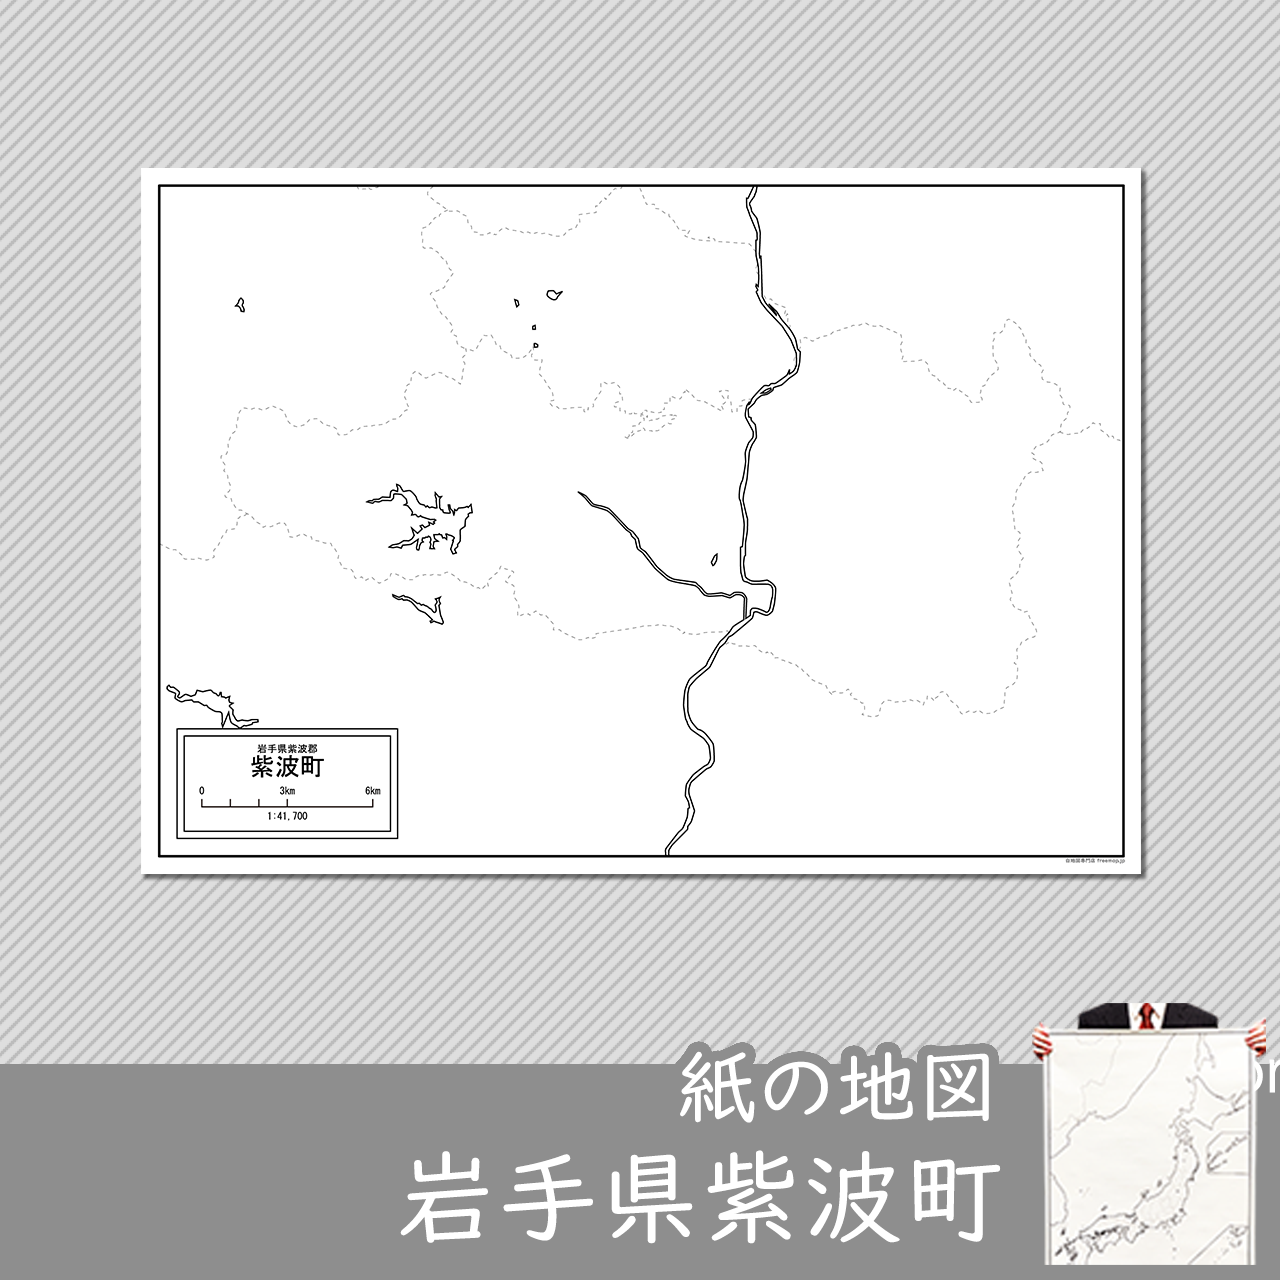 紫波町の紙の白地図のサムネイル